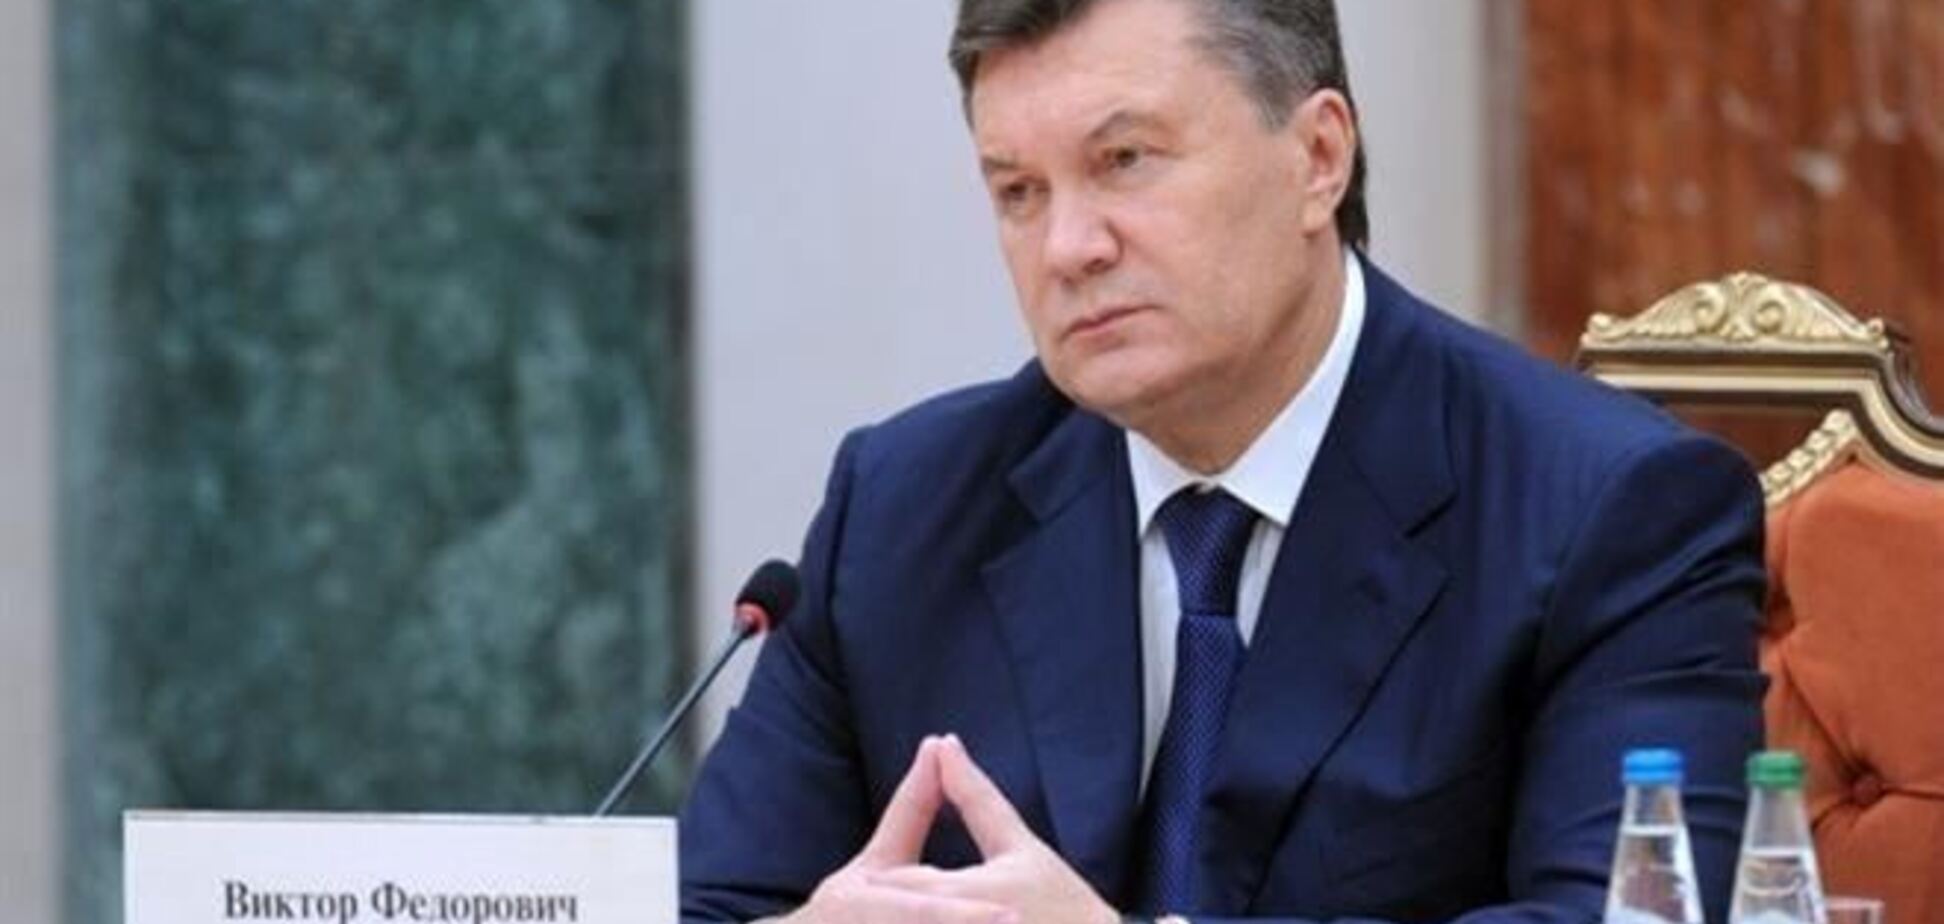 Ідею санкцій проти Януковича на сайті Білого дому підтримали вже більше 20 тис. чол